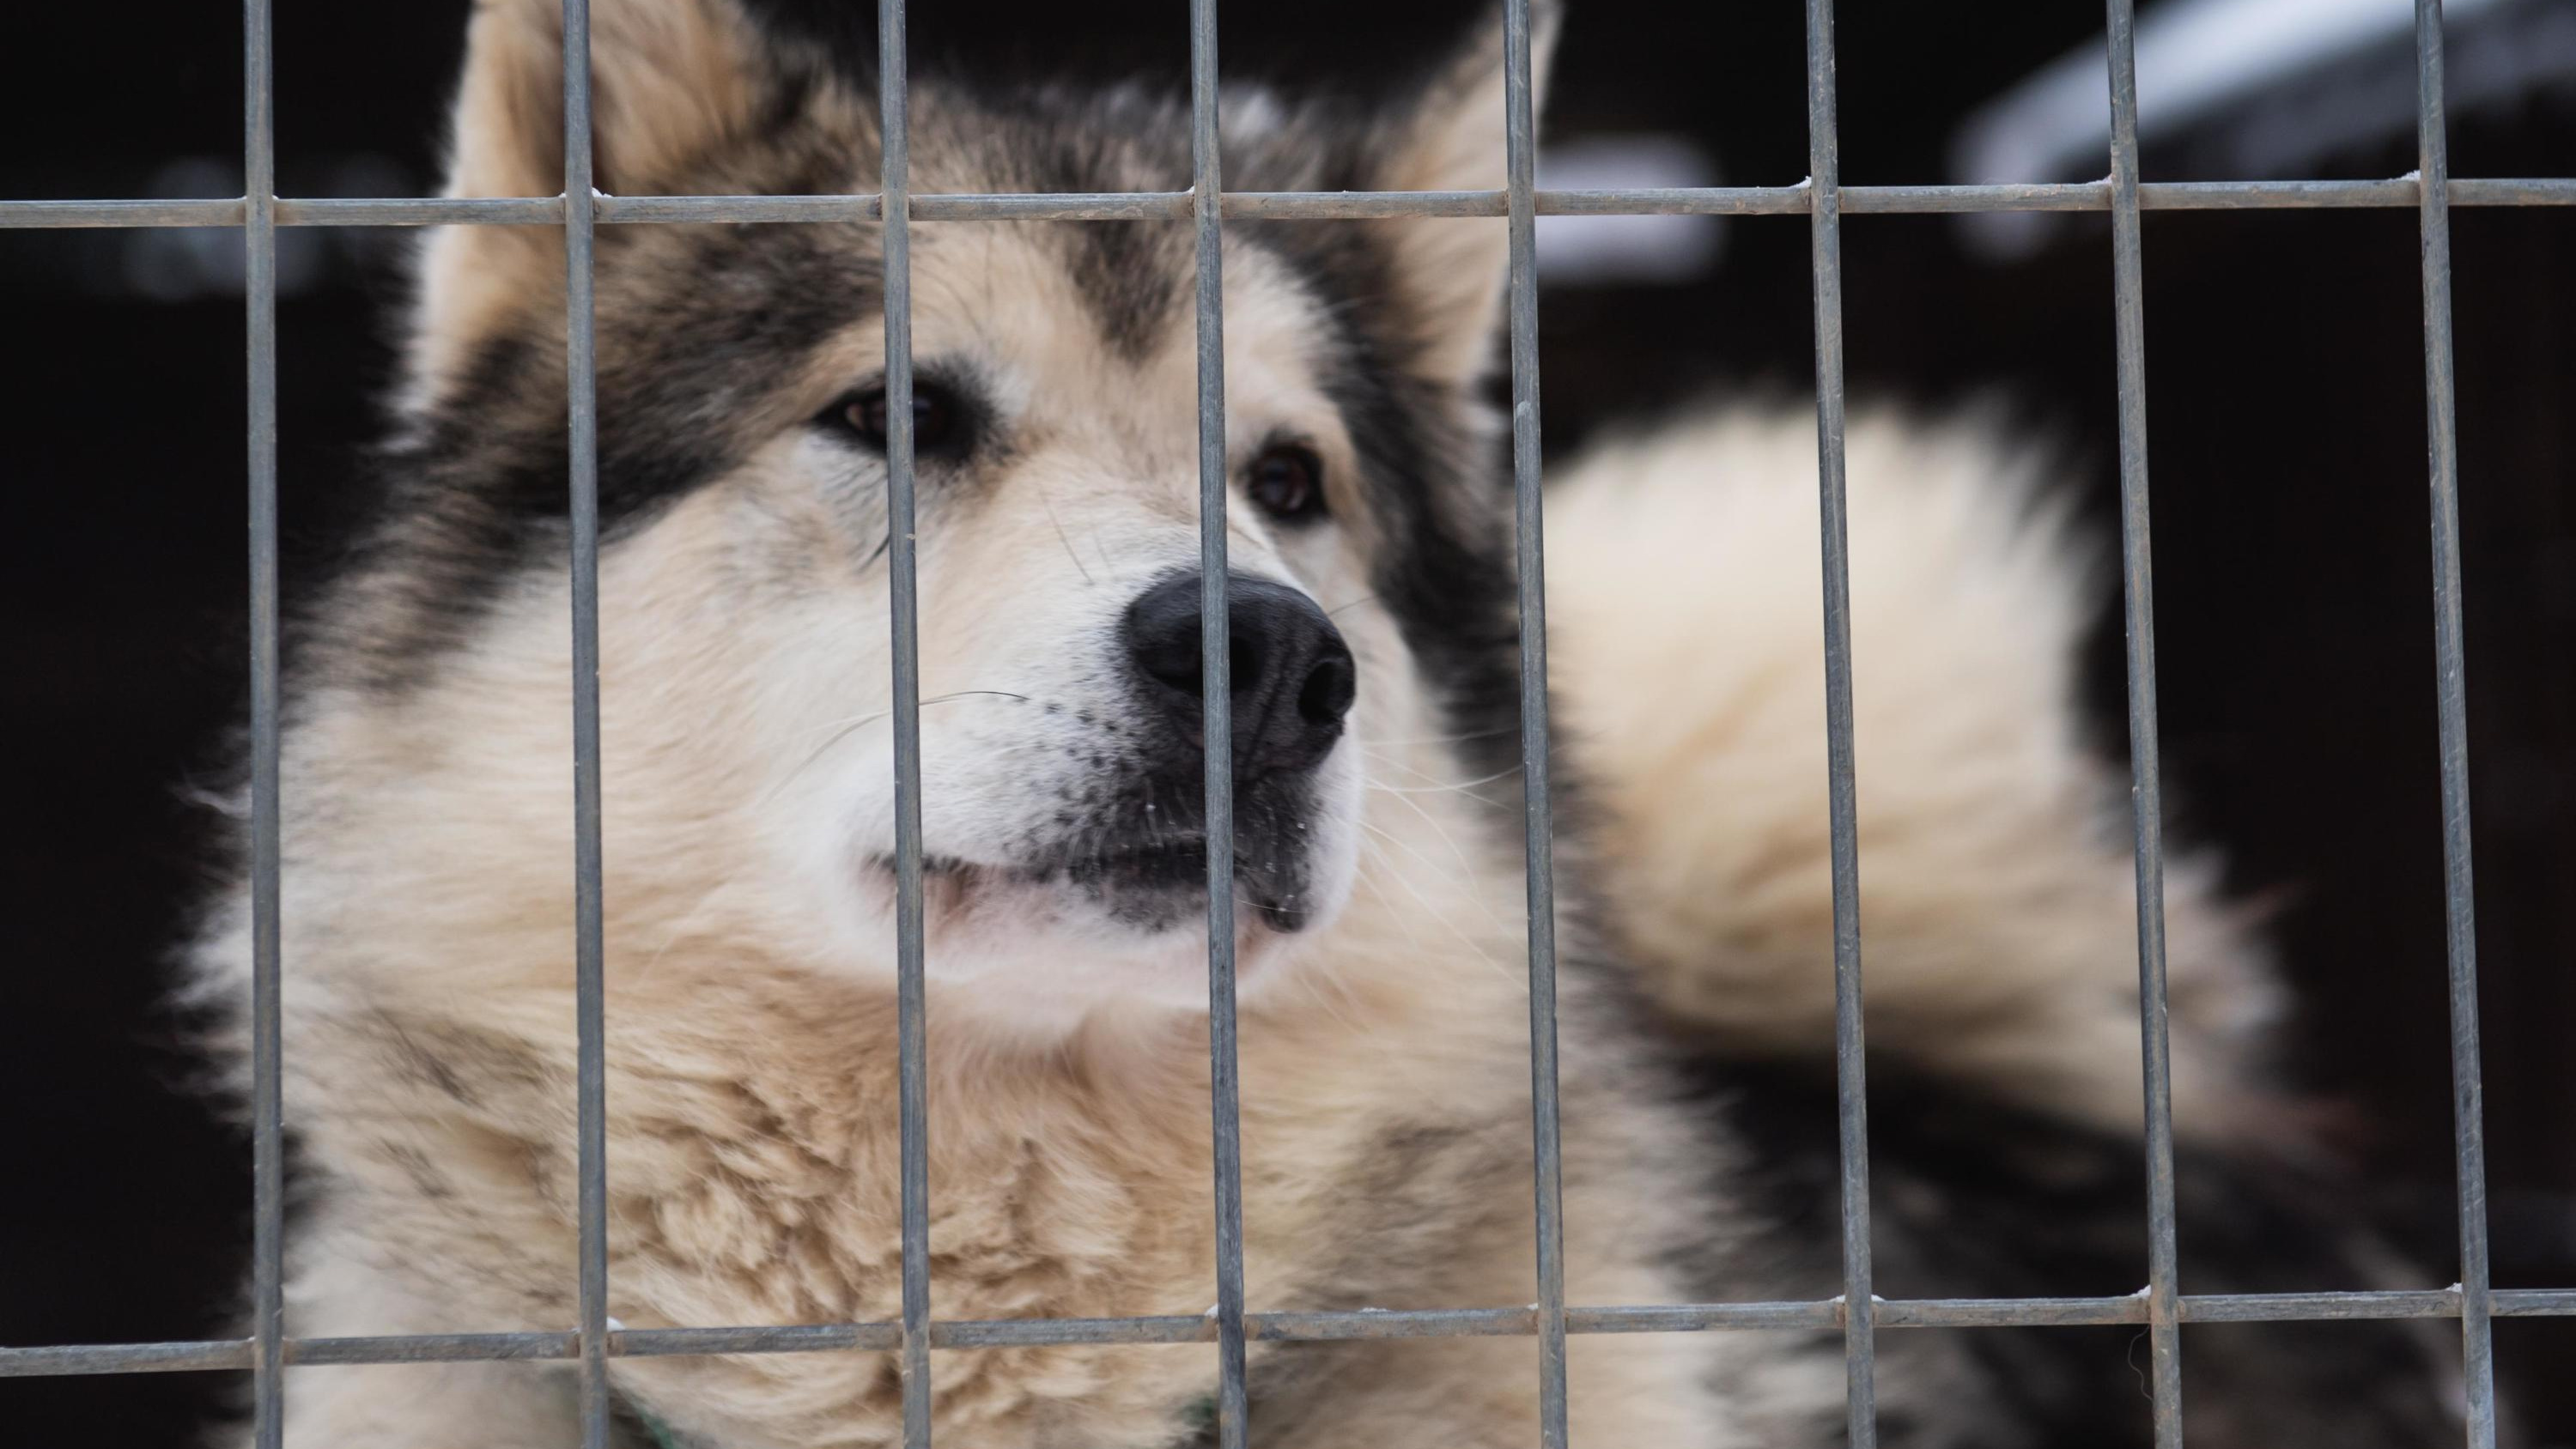 Сибиряк рассказал о жестоком убийстве собаки в Кузбассе. Почему теперь им заинтересовалась полиция